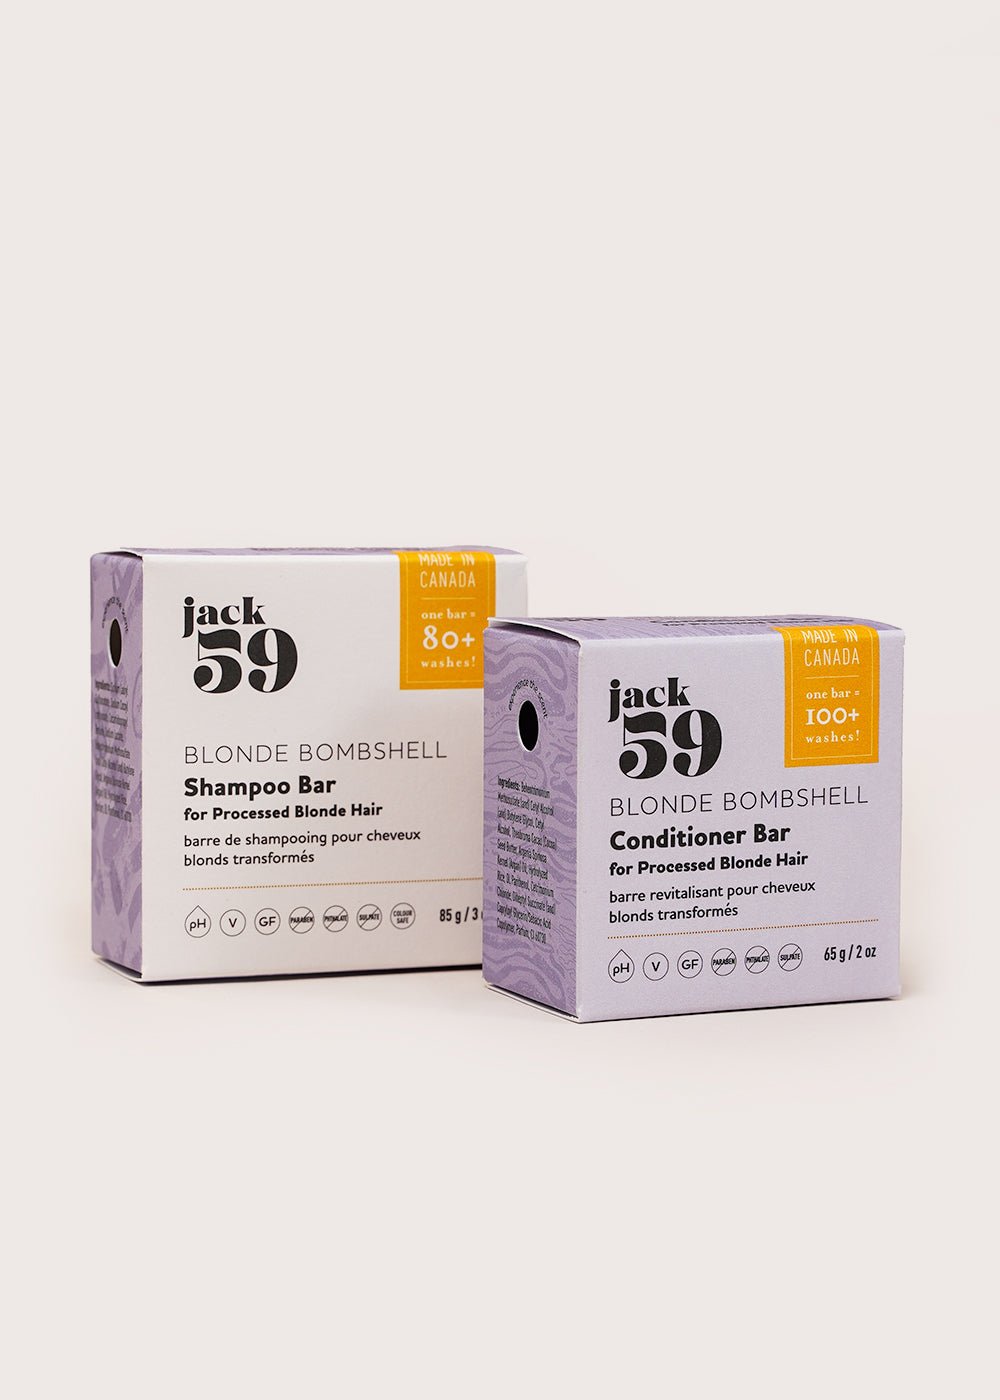 Jack59 Blonde Bombshell Shampoo Bar - New Classics Studios Sustainable Ethical Fashion Canada